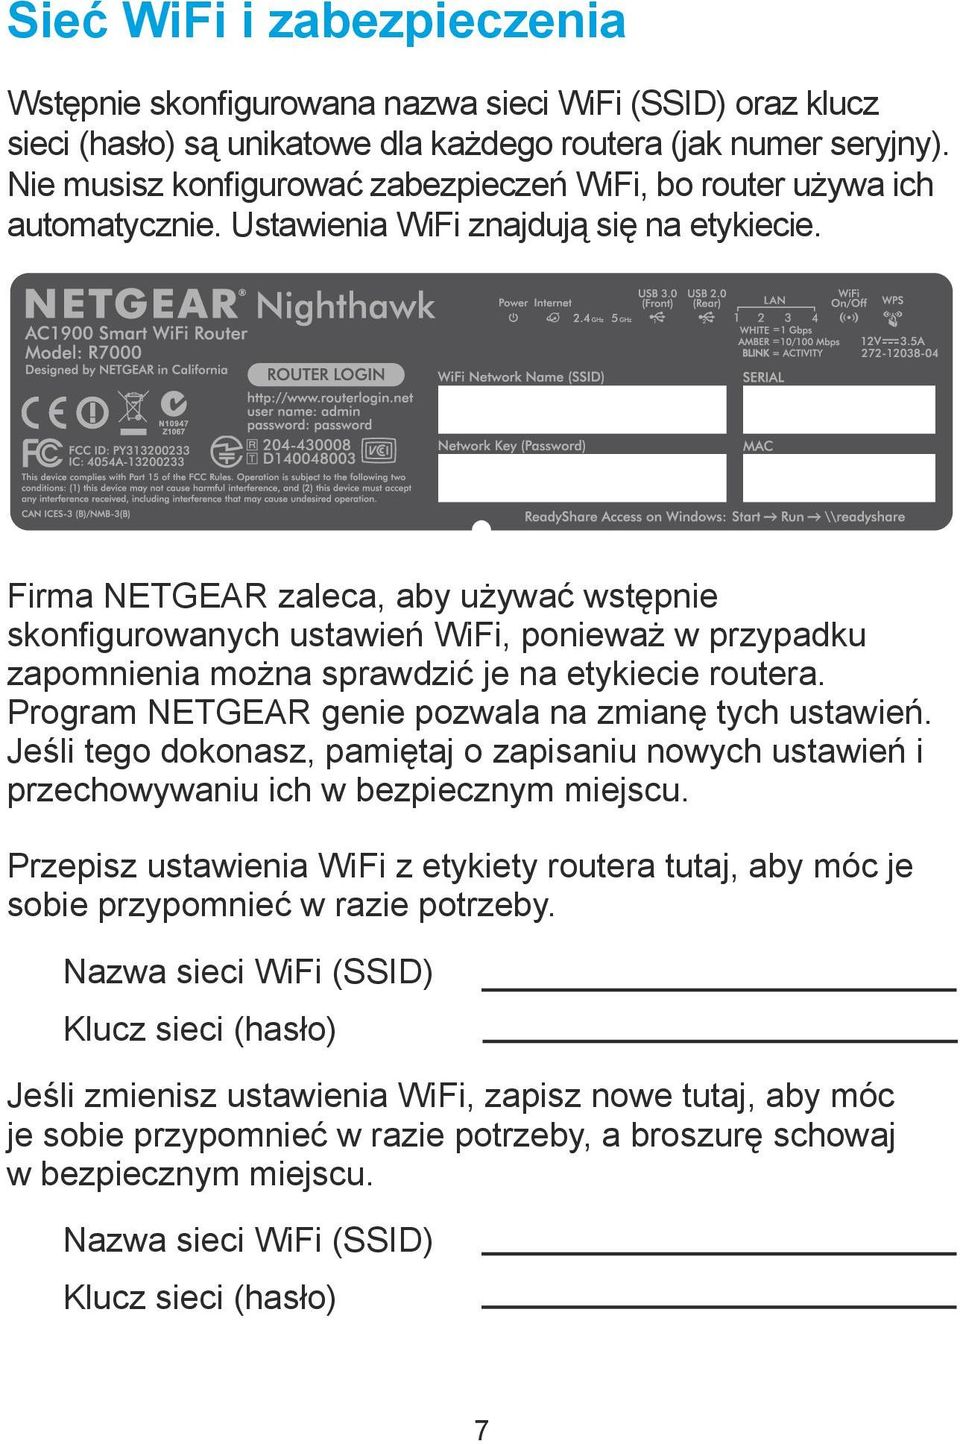 Firma NETGEAR zaleca, aby używać wstępnie skonfigurowanych ustawień WiFi, ponieważ w przypadku zapomnienia można sprawdzić je na etykiecie routera.